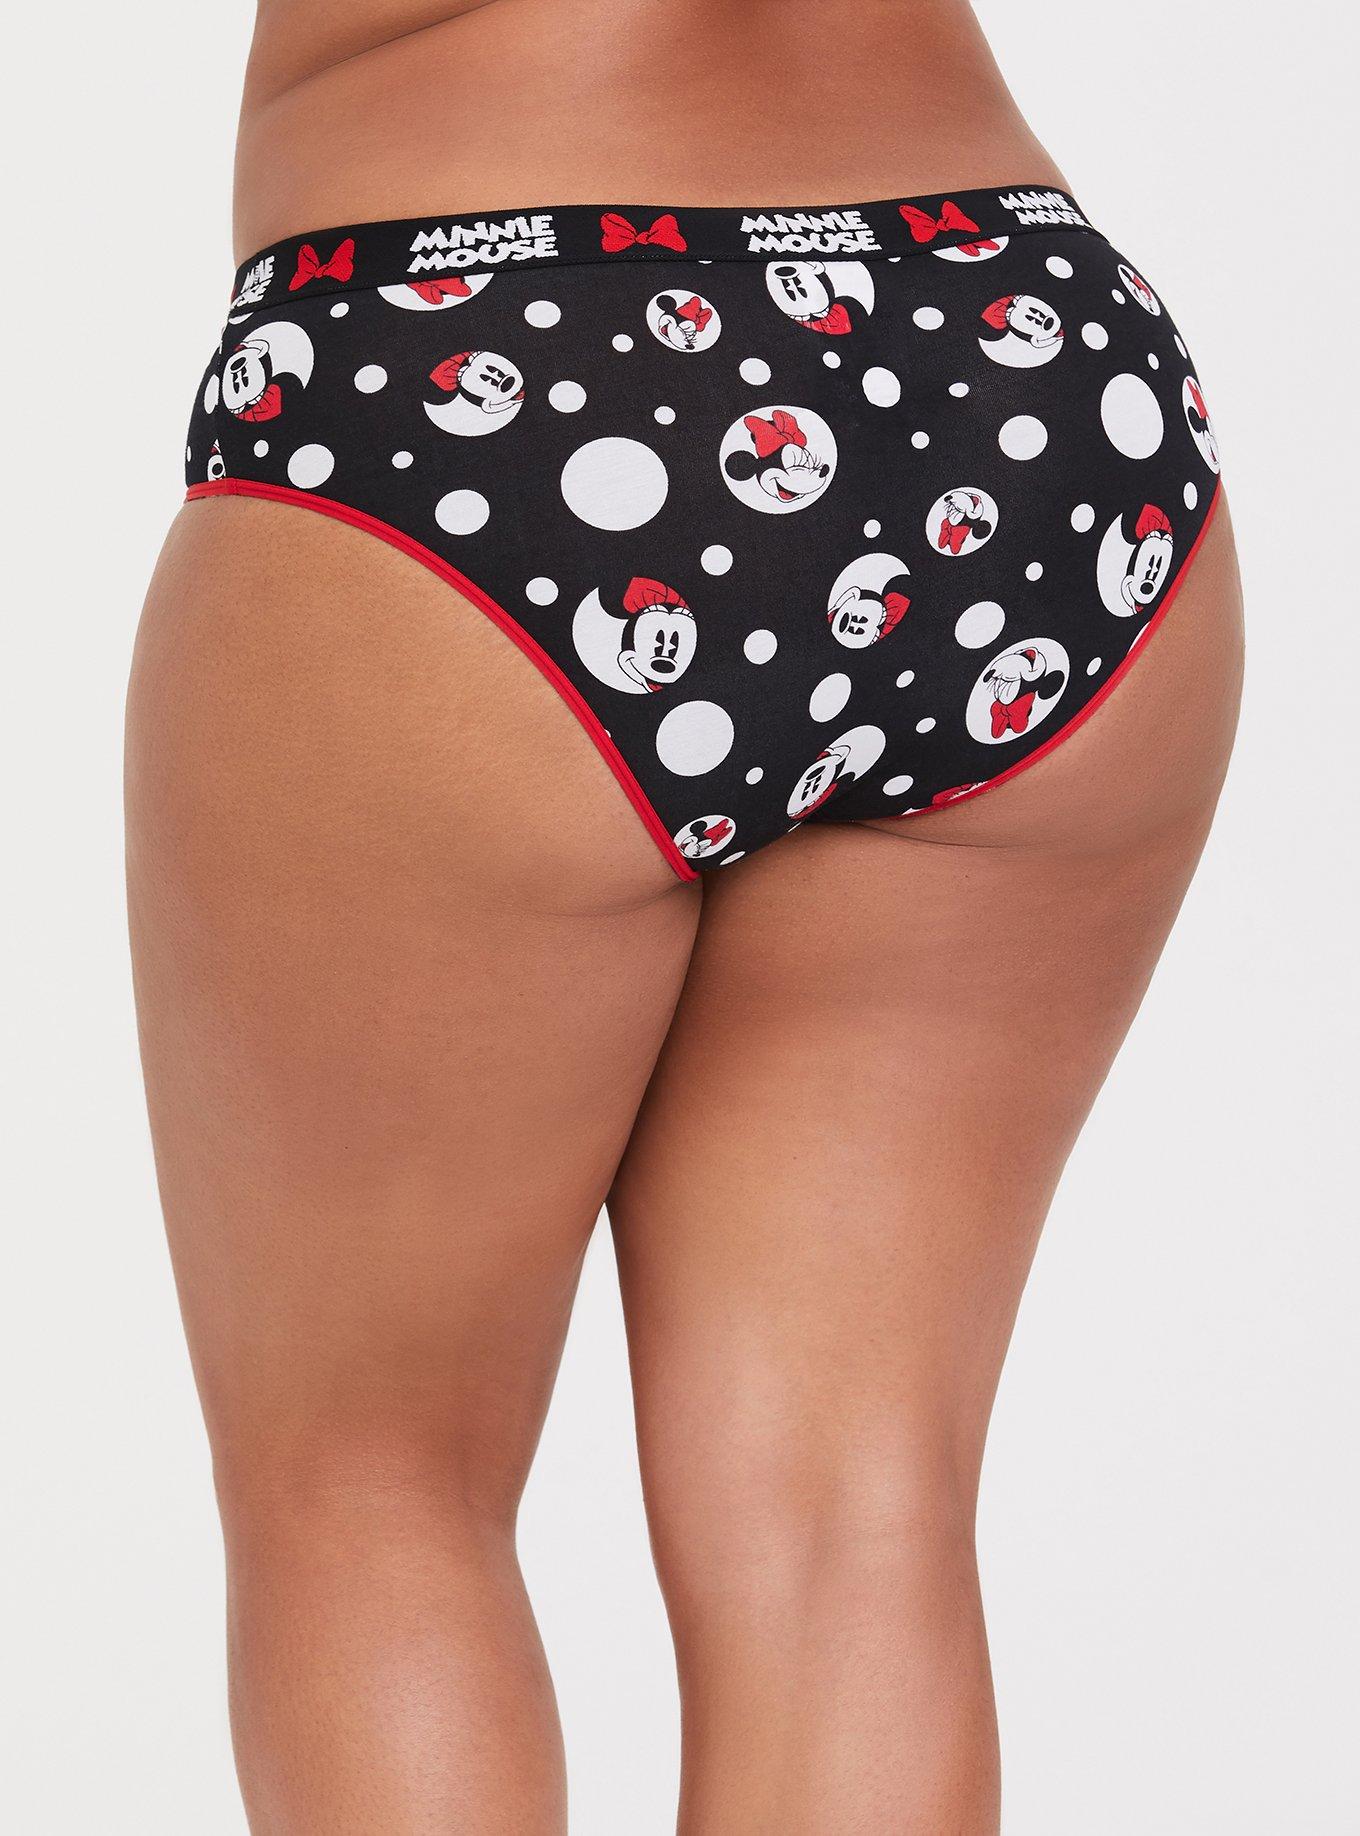 Torrid Thong Panties Underwear Disney Marvel Deadpool Tacos Plus Size 2 18  / 20 